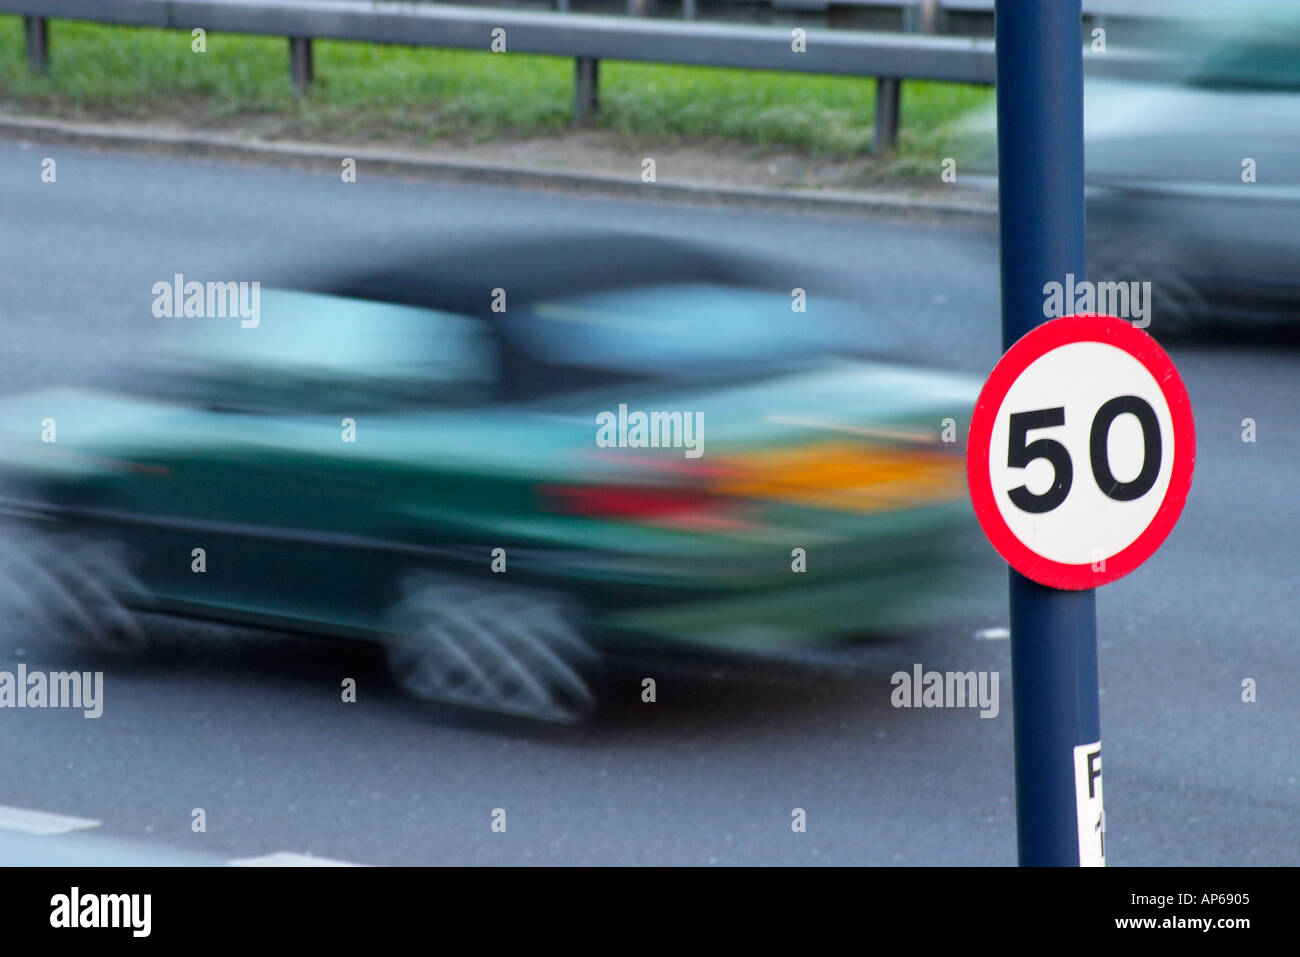 Mph vitesse limite sur autoroute autoroute route signe à Londres Angleterre Grande-bretagne Royaume-Uni Royaume-Uni Banque D'Images